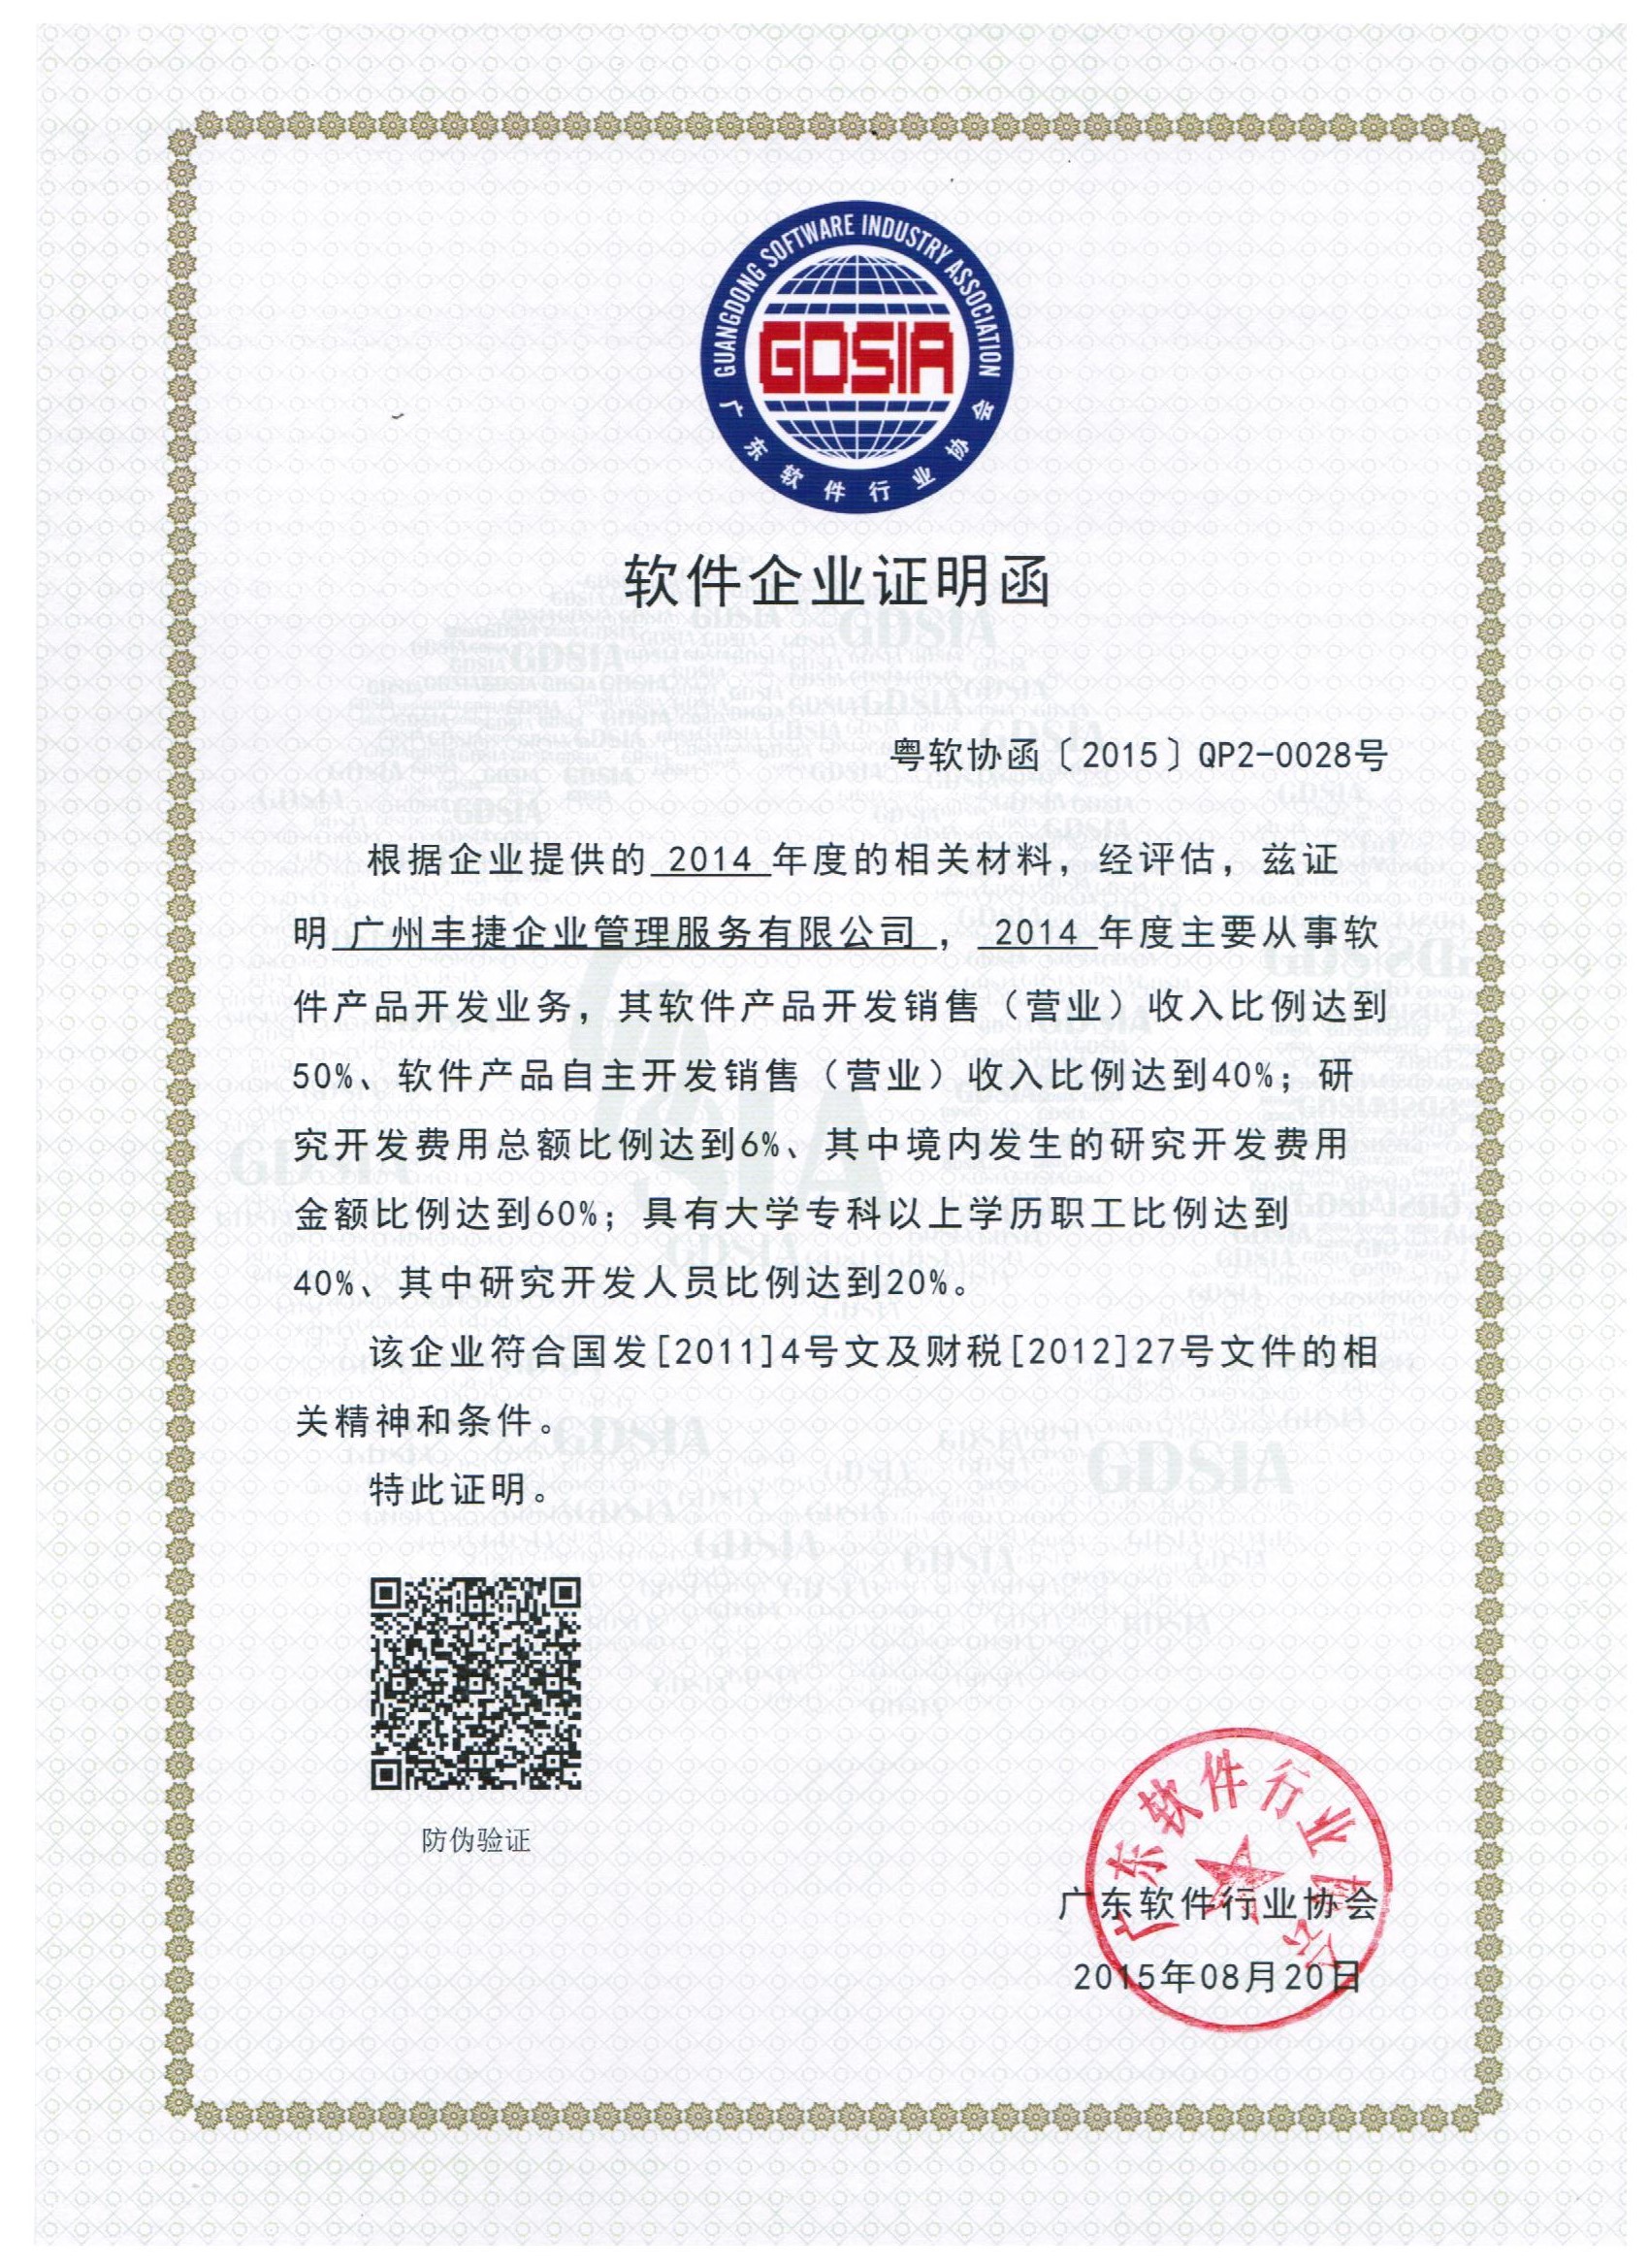 广东省软件企业证明函,丰捷软件